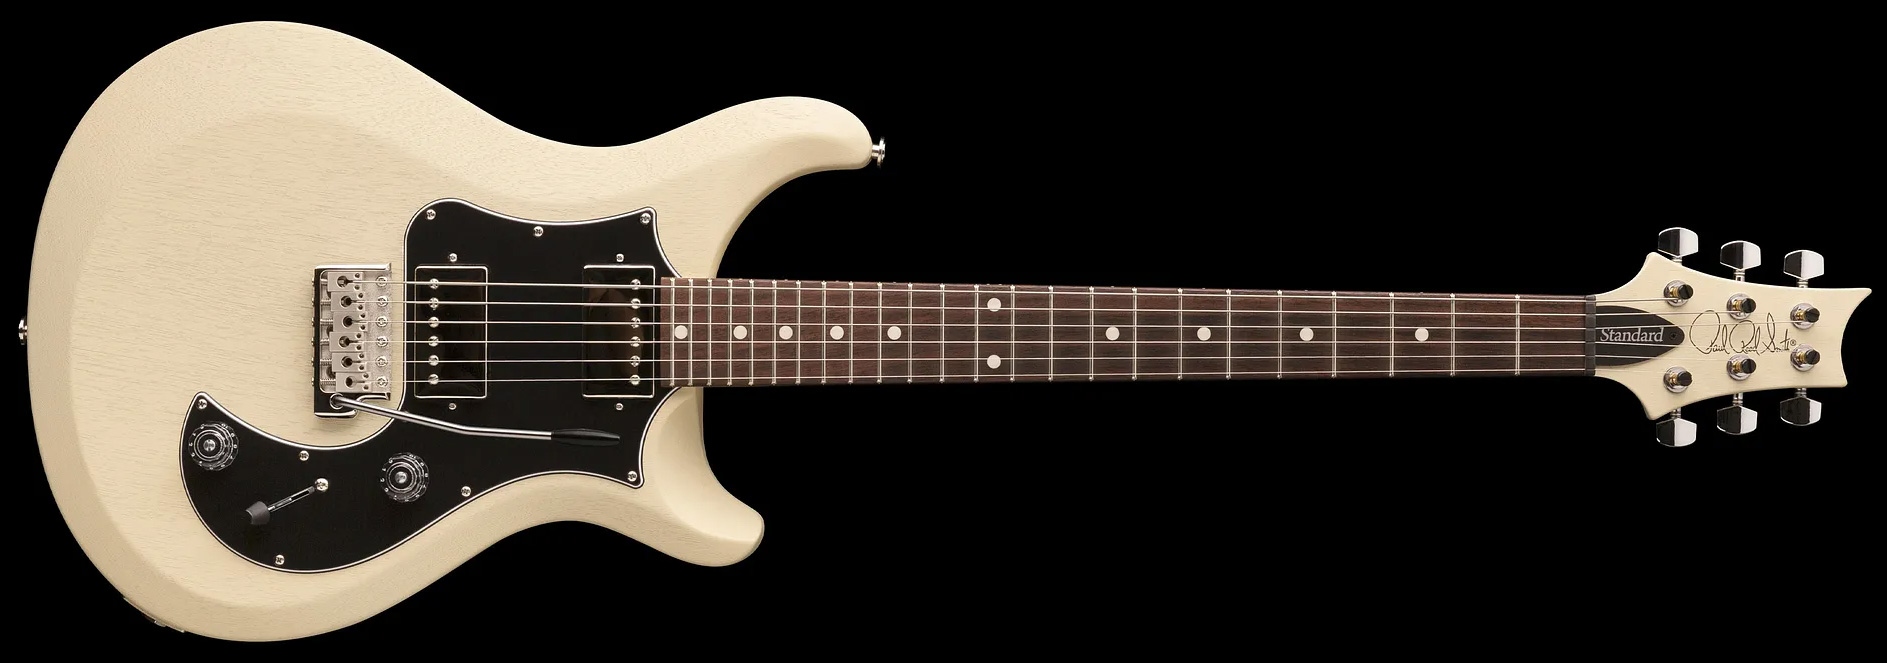 Prs S2 Standard 24 Satin Usa 2h Trem Rw - Antique White - Guitarra eléctrica de doble corte - Variation 1